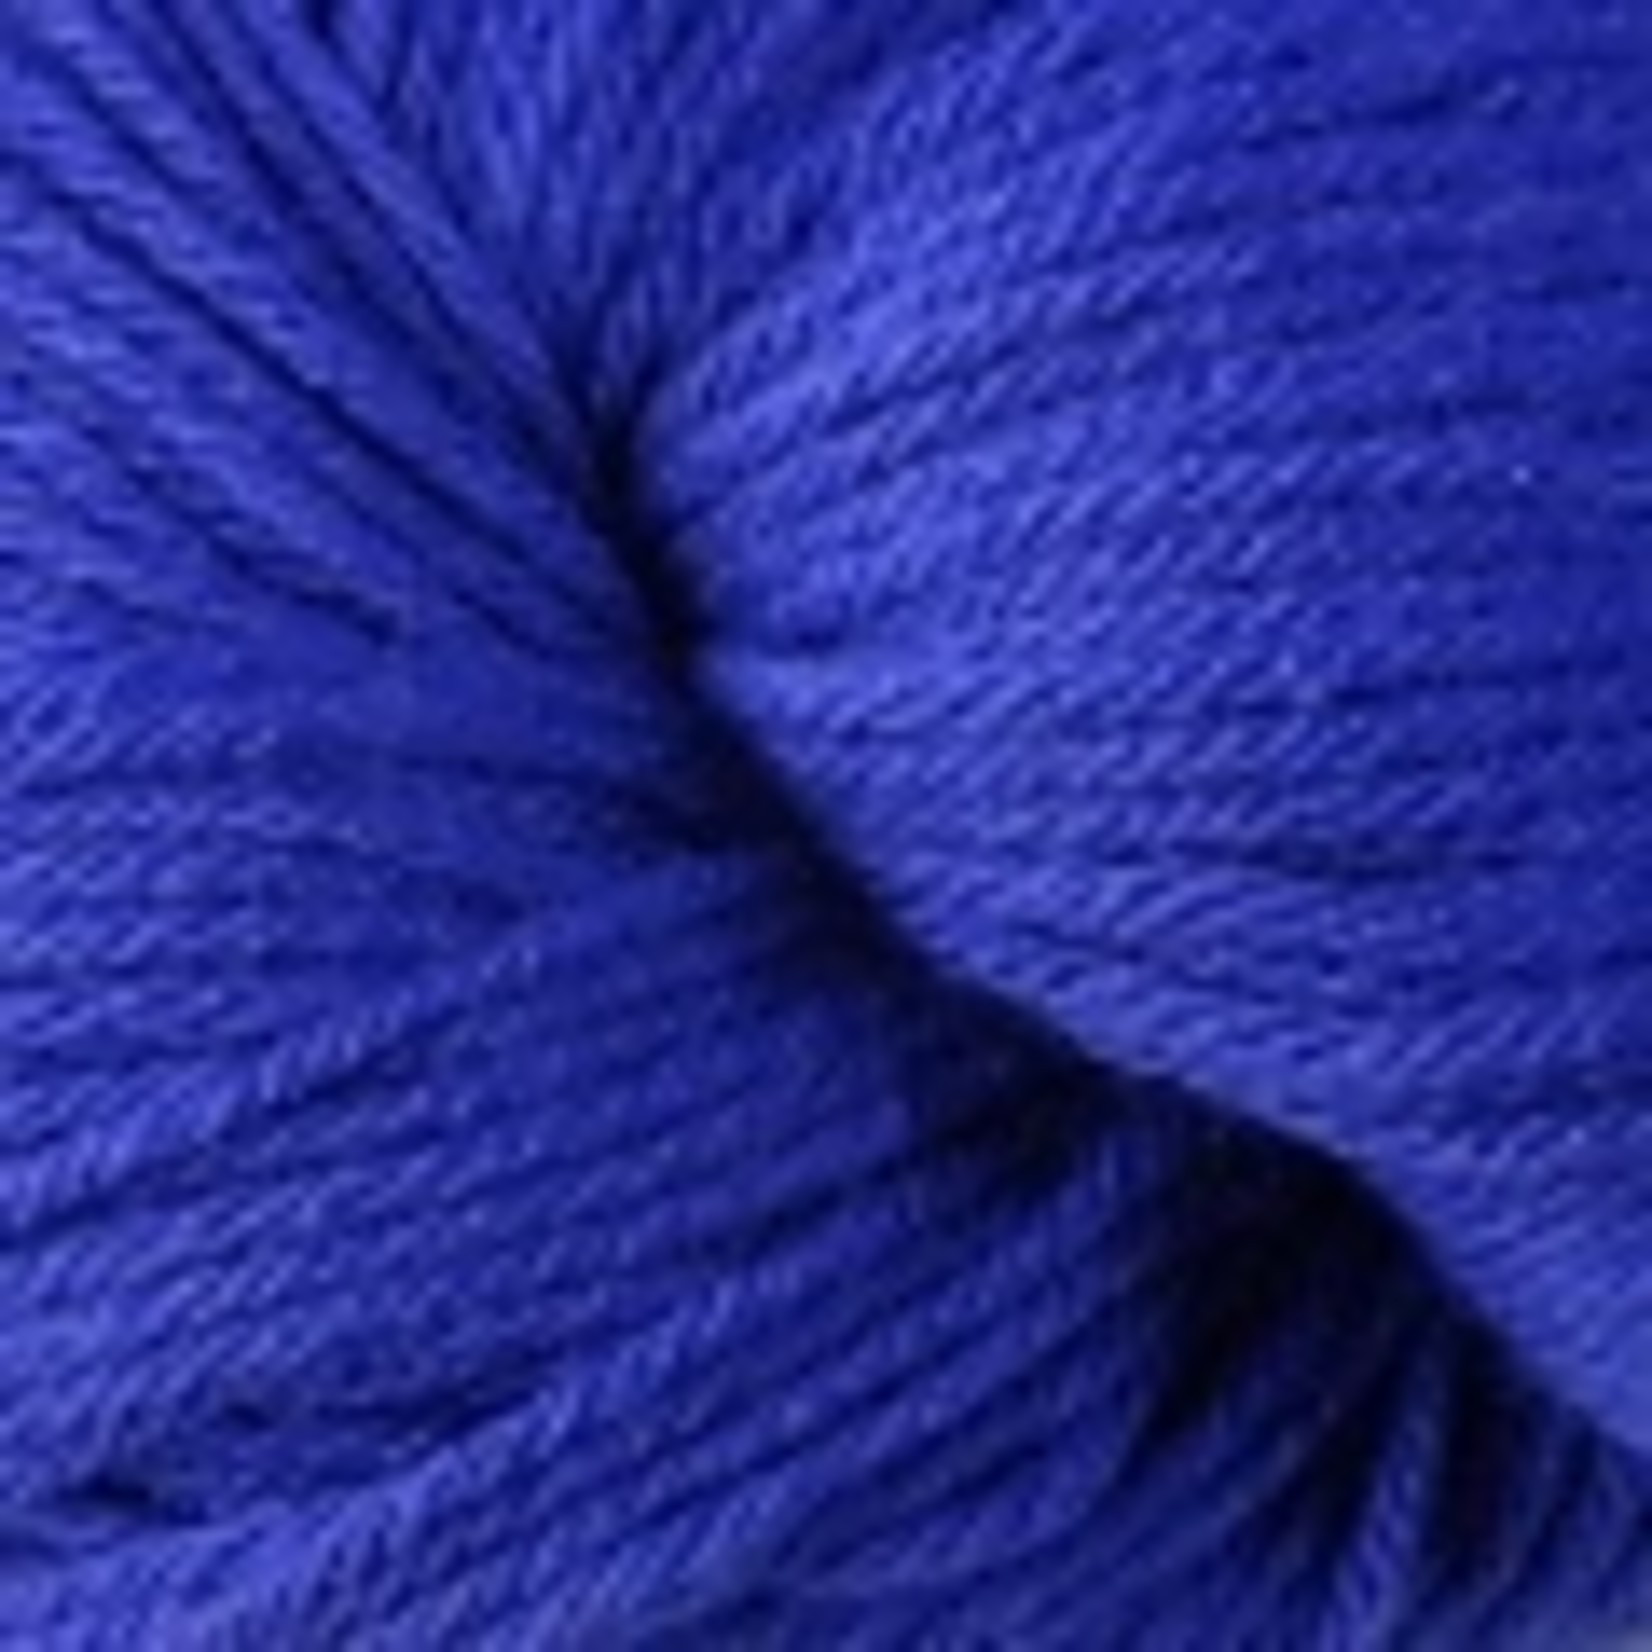 Berroco Vintage Wool, 5160, Wild Blueberry